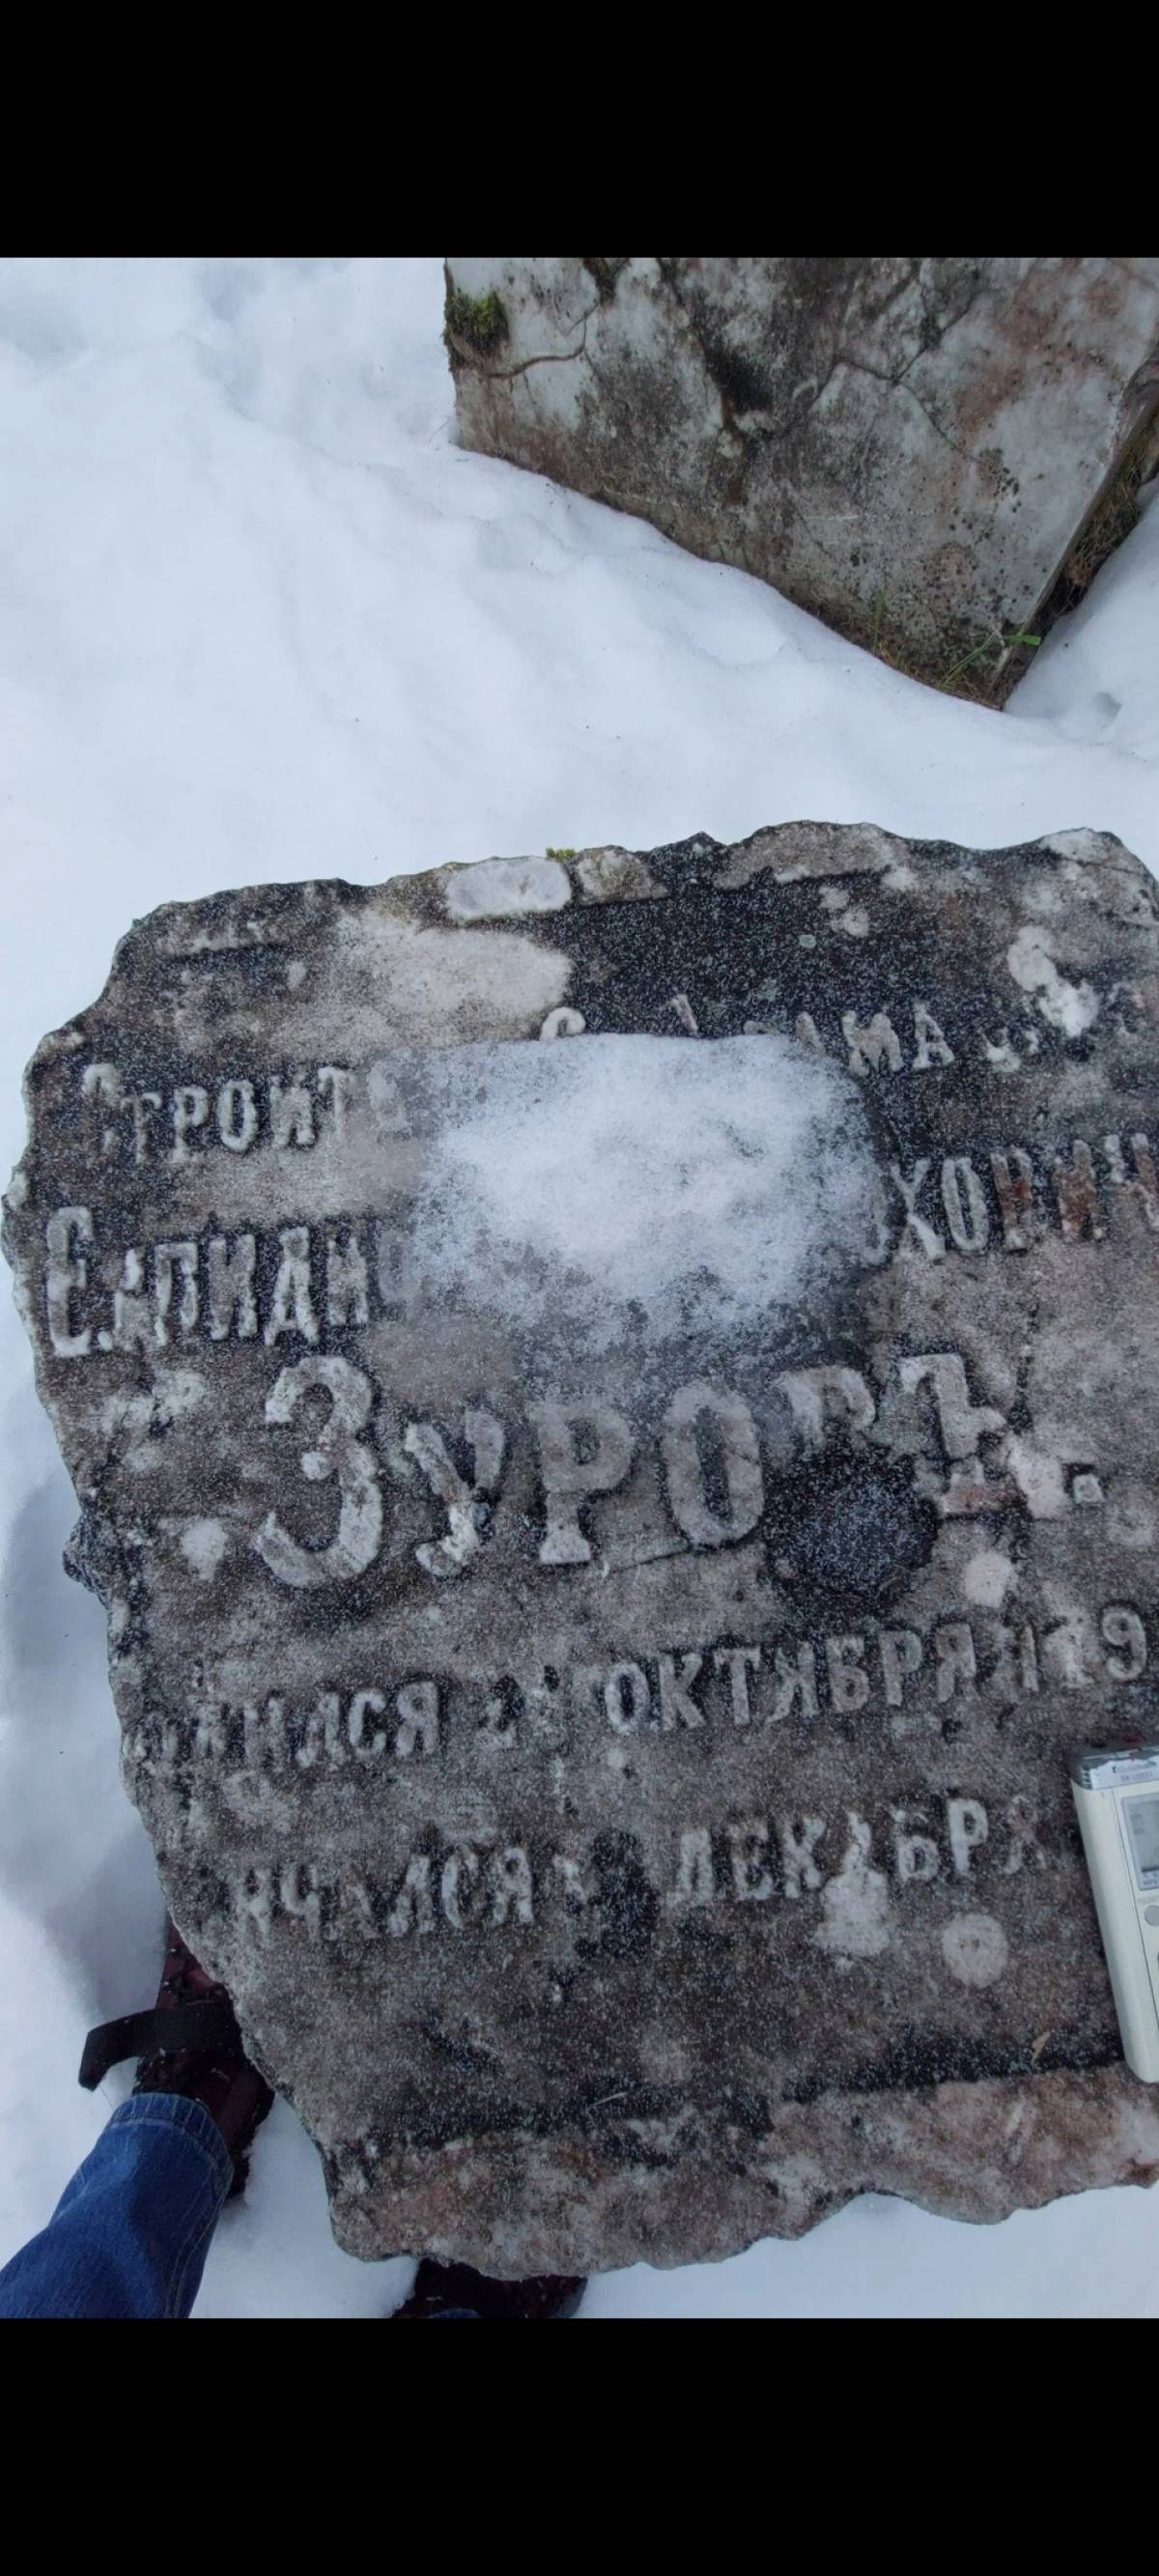 Могильная плита с именем Зурова стала местной достопримечательностью.